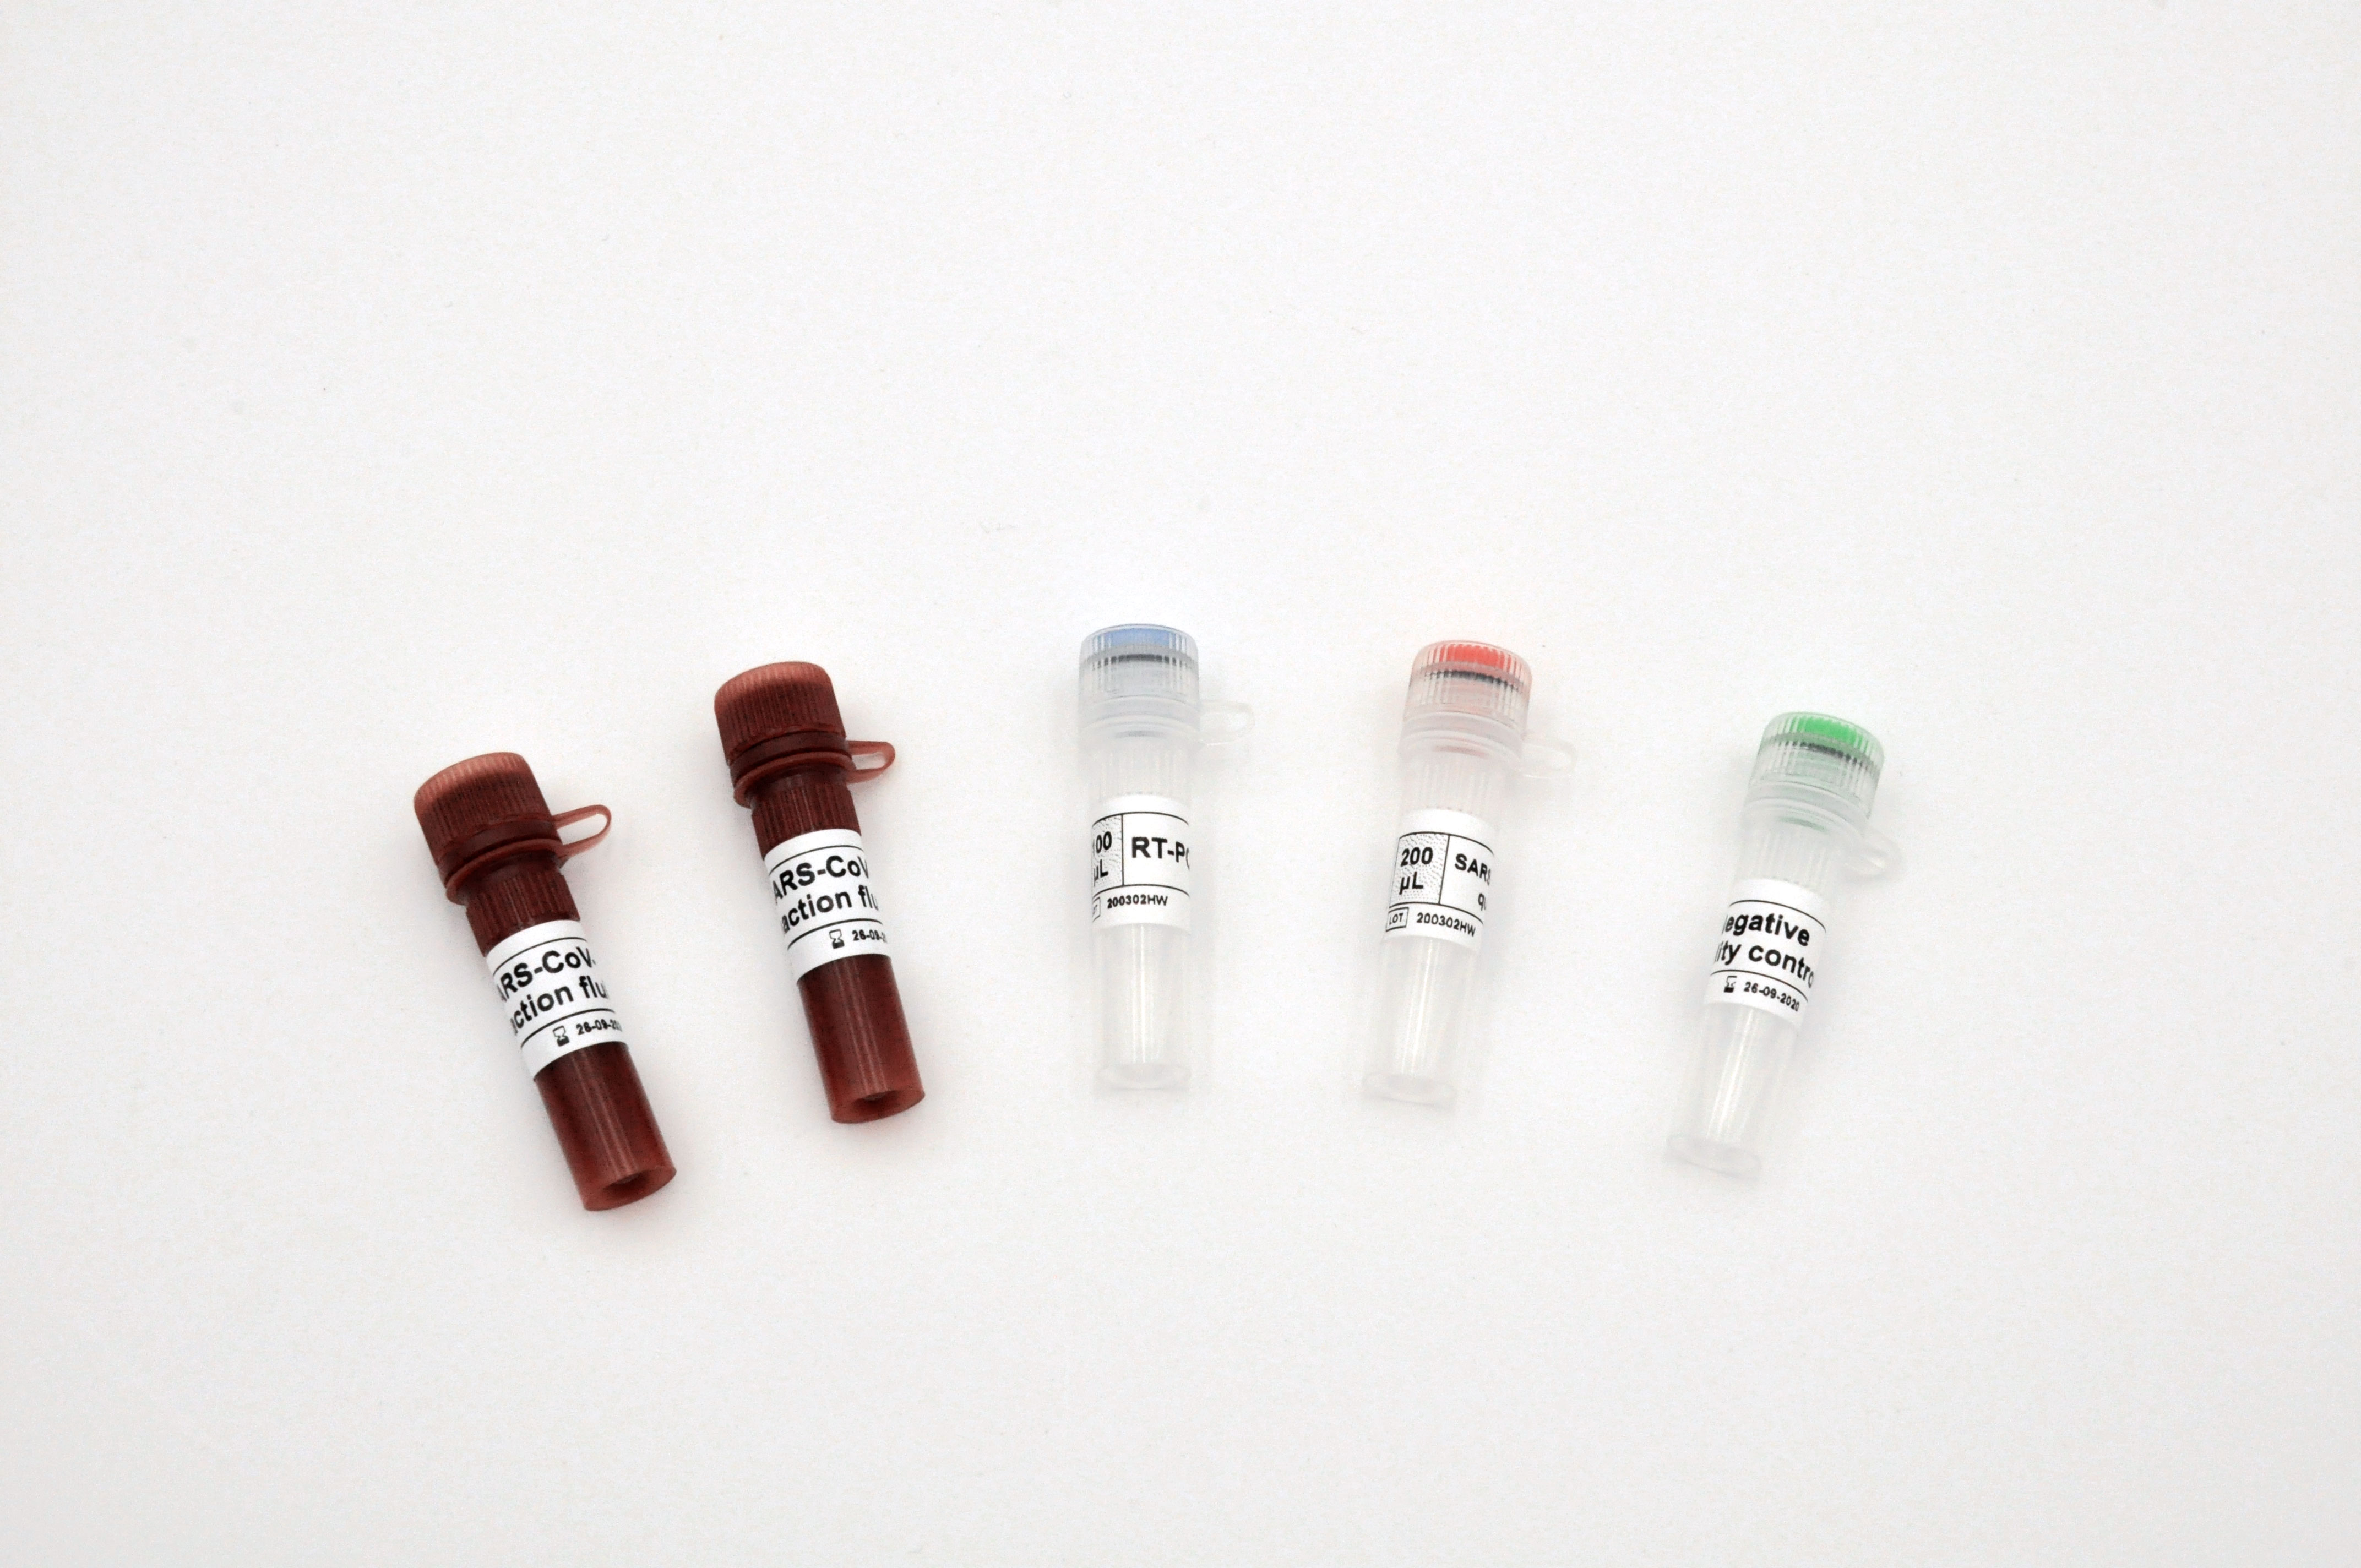 【明德】新型冠状病毒2019-nCoV核酸检测试剂盒(荧光PCR法) / 大包装:25人份/盒、50人份/盒、100人份/盒。单管单人份包装:25人份/盒、50人份/盒、100人份/盒-云医购